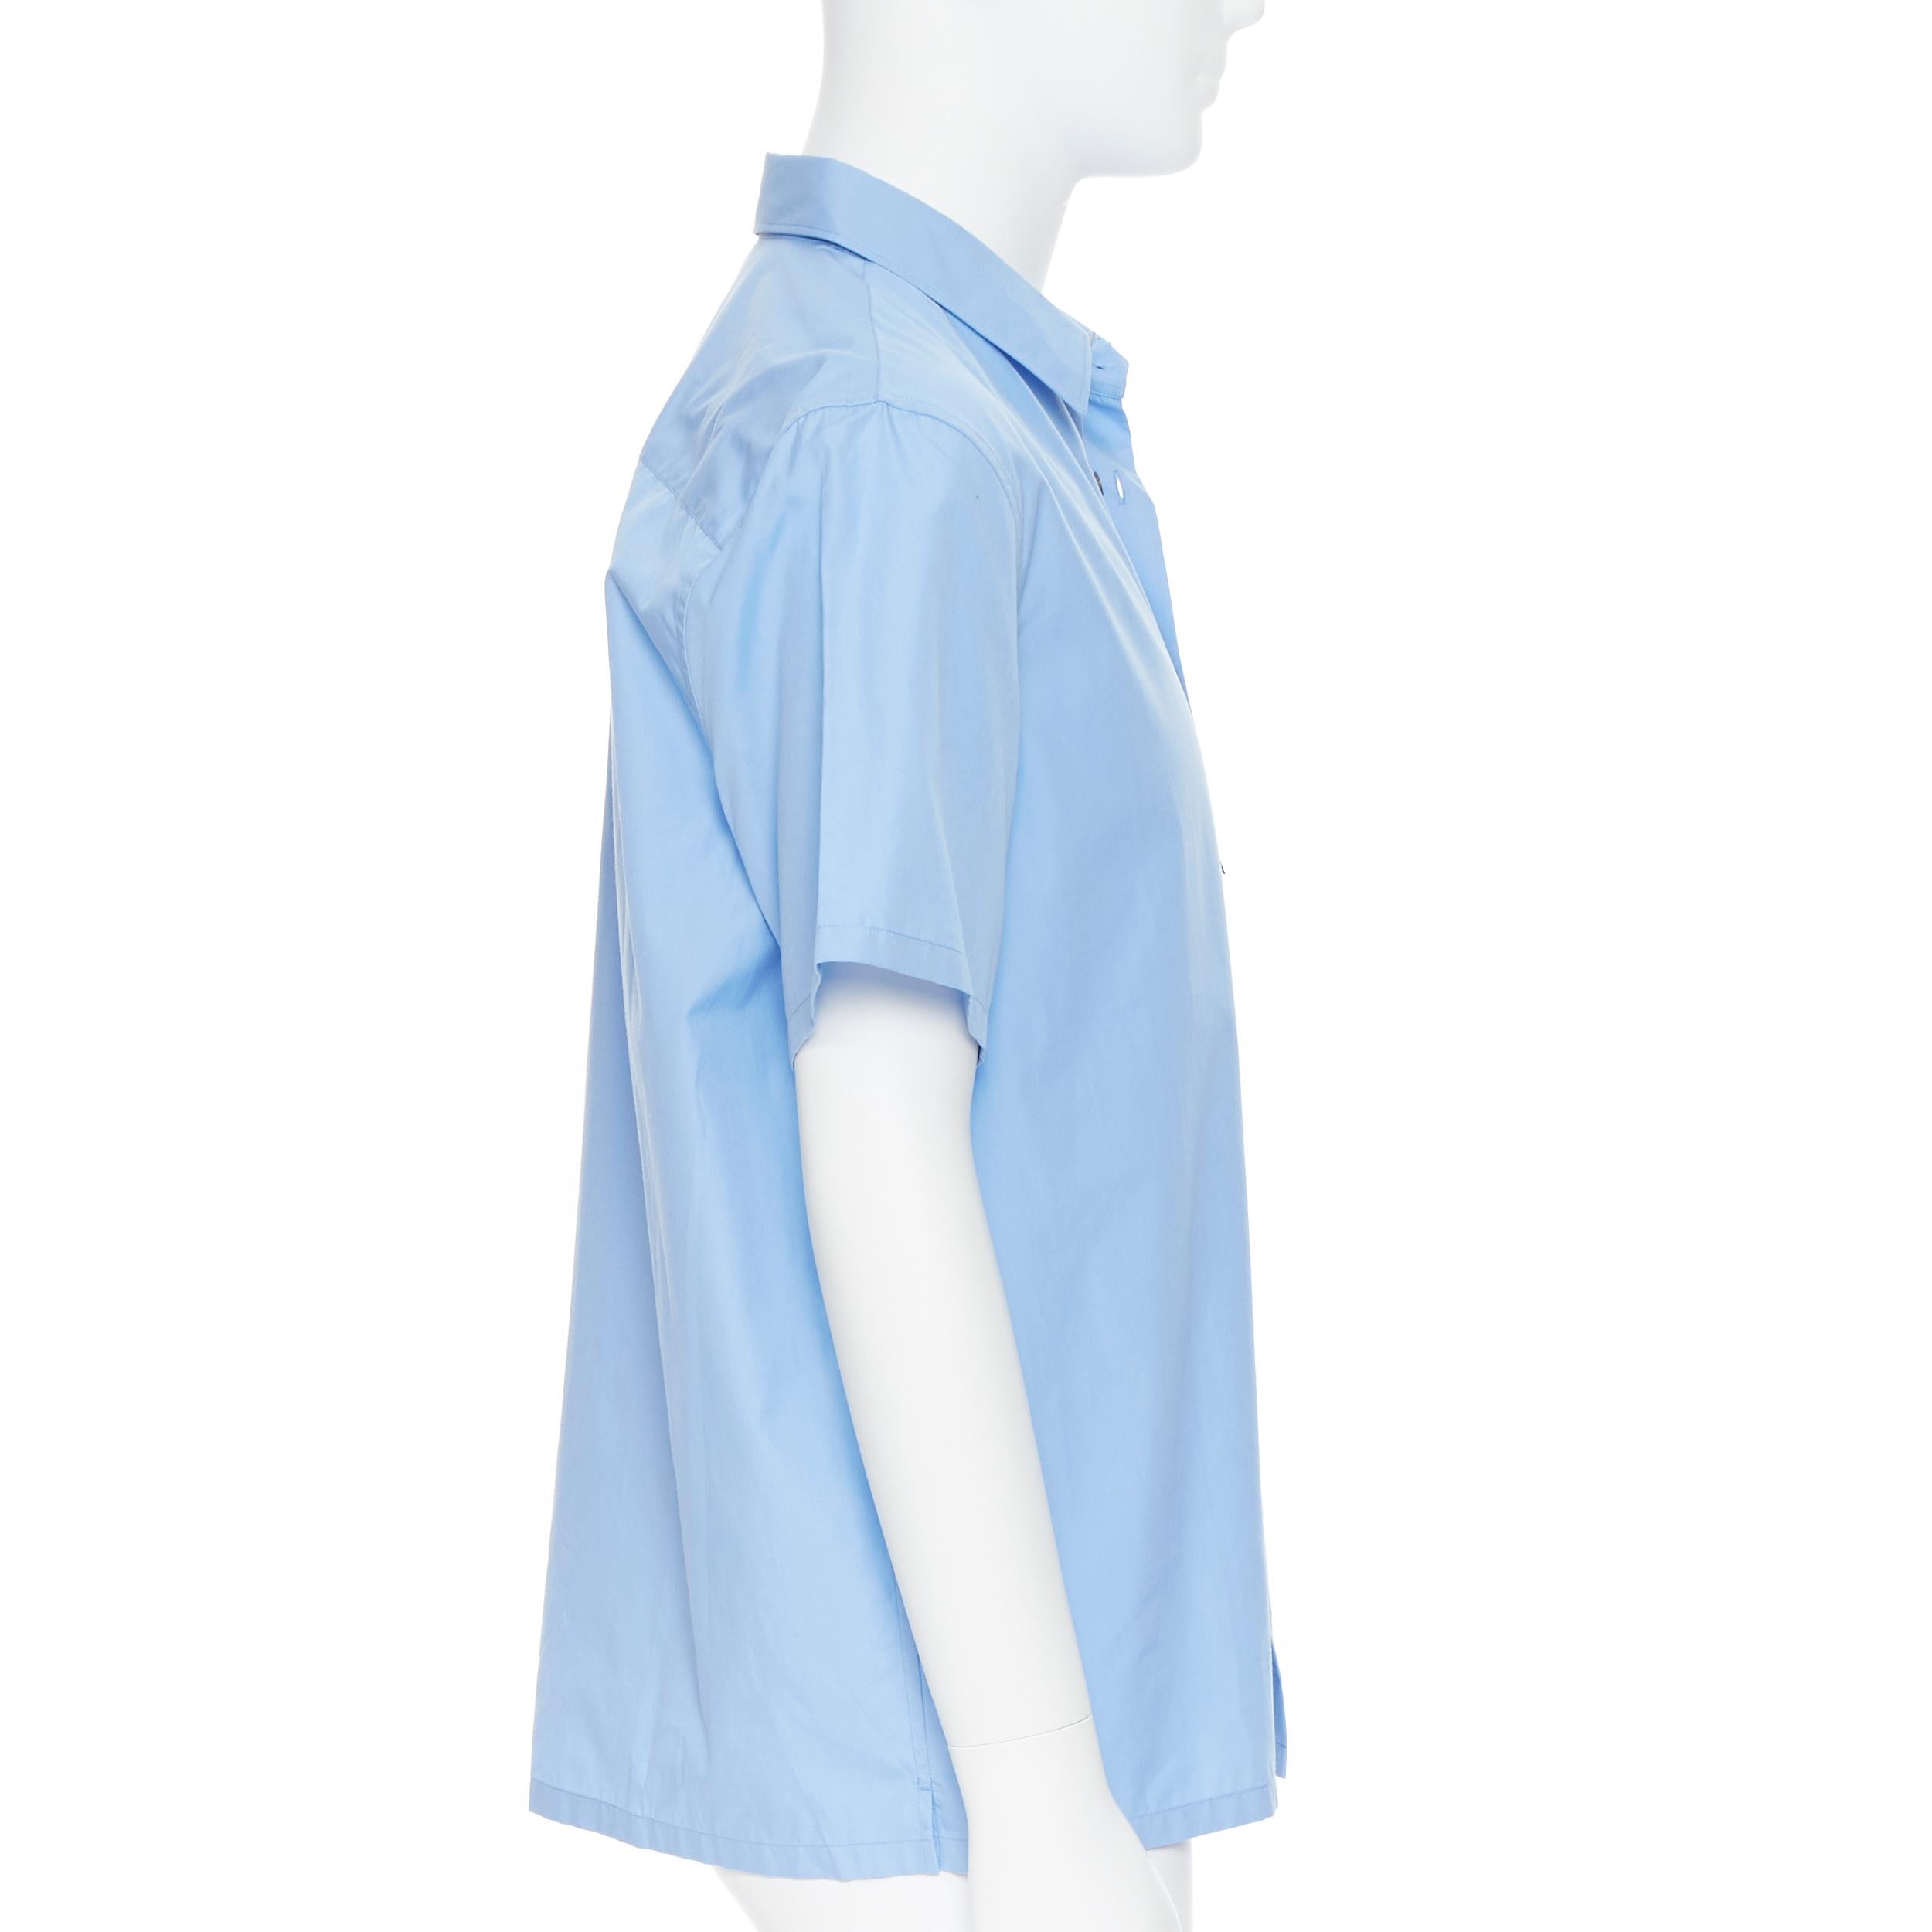 Blue new PRADA 2019 light blue rubber logo patch breast pocket casual shirt EU41 L